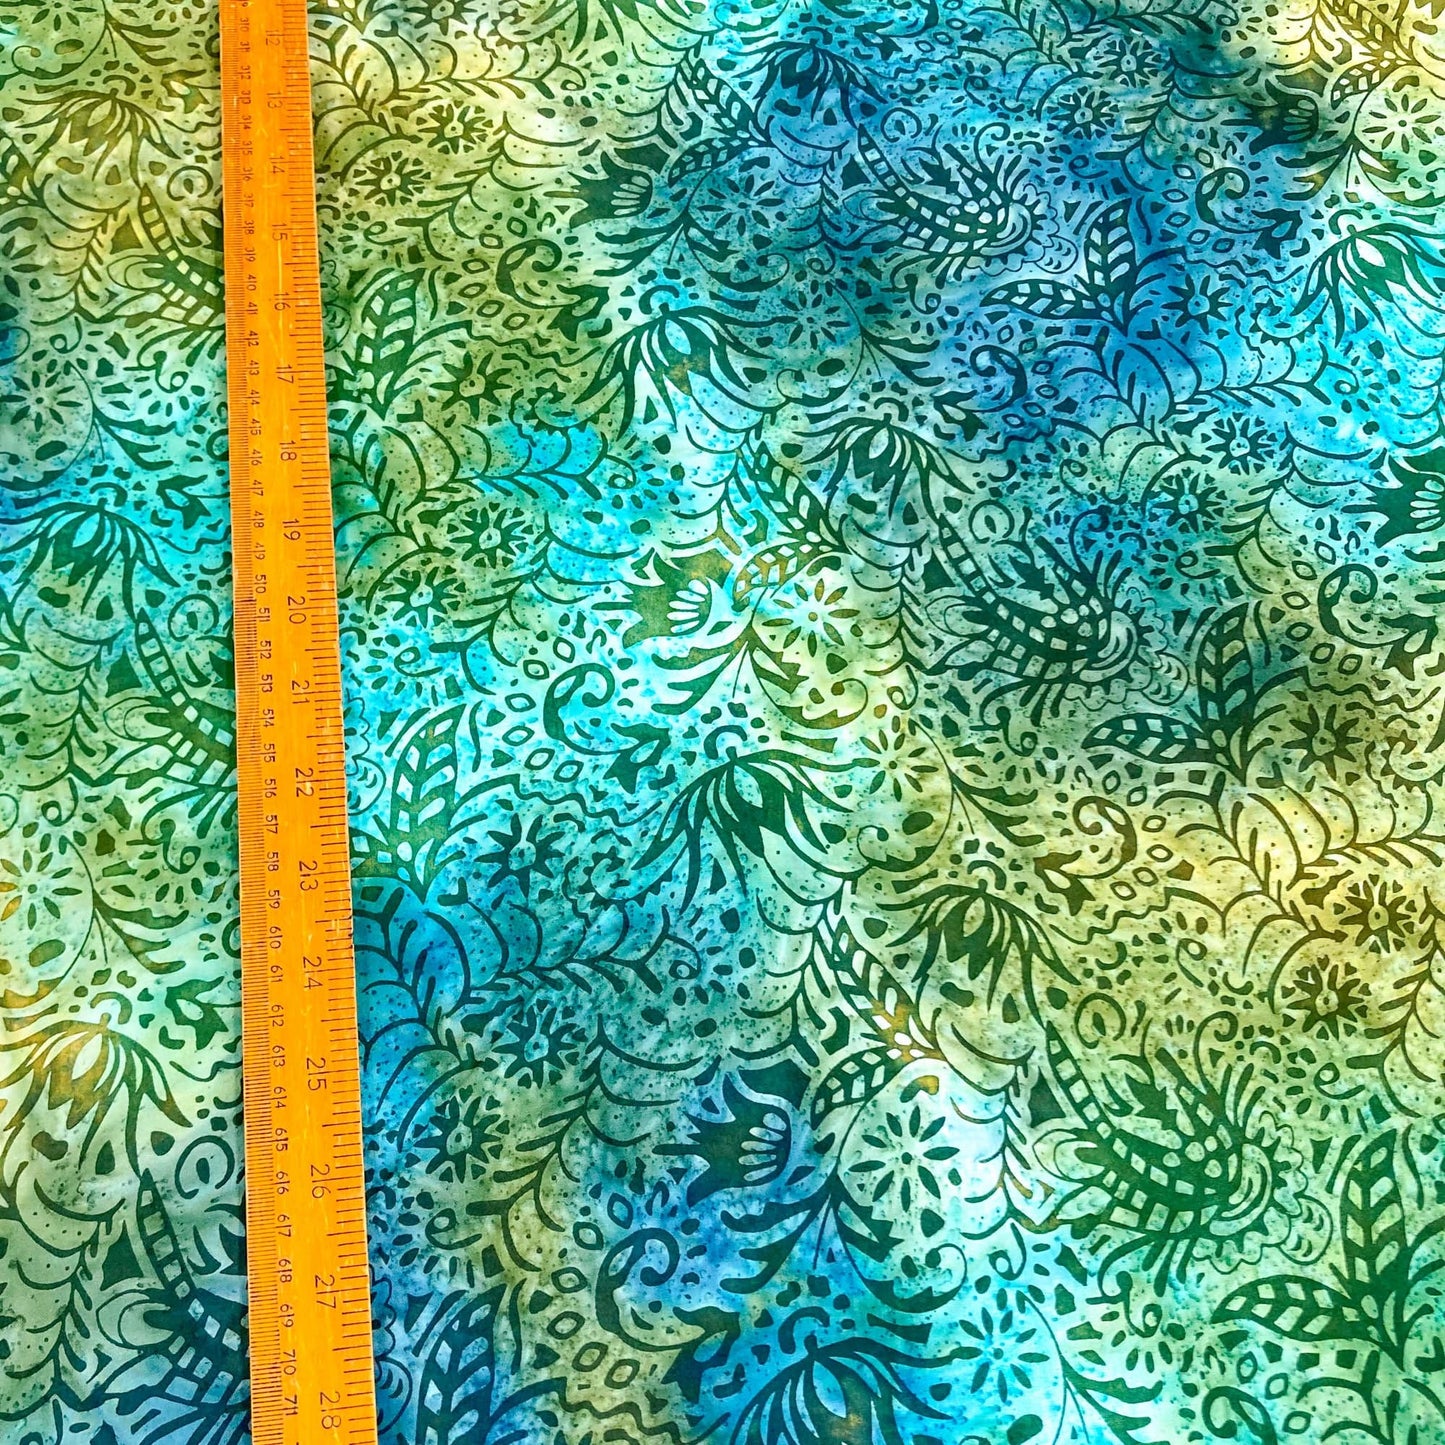 Cotton Batik with Aqua and Green Floral Design